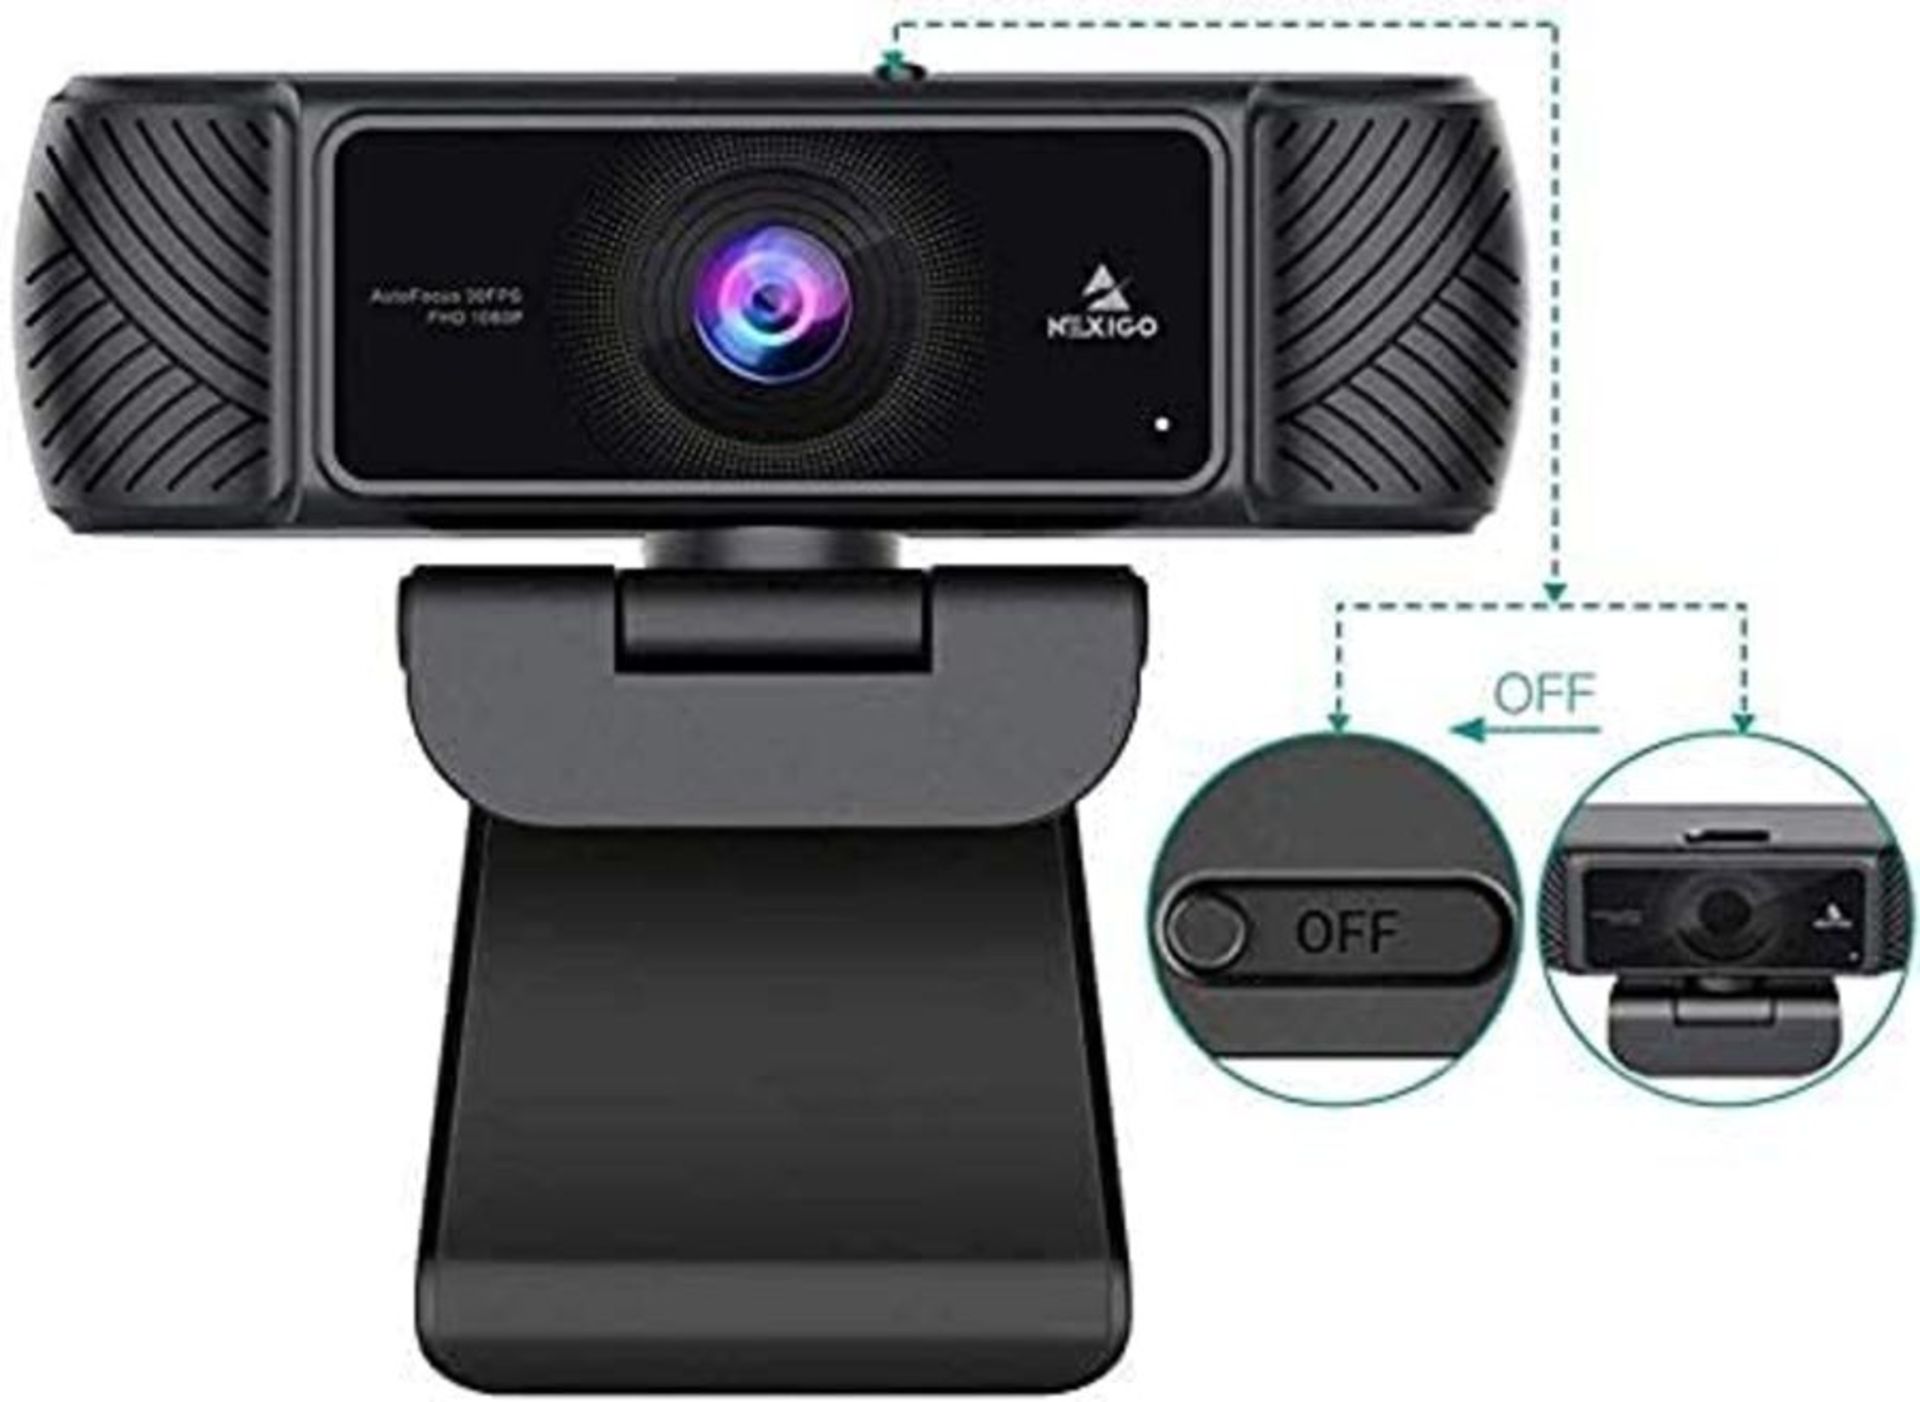 2021 AutoFocus 1080P Webcam with Microphone, Software and Privacy Cover, NexiGo N680 B